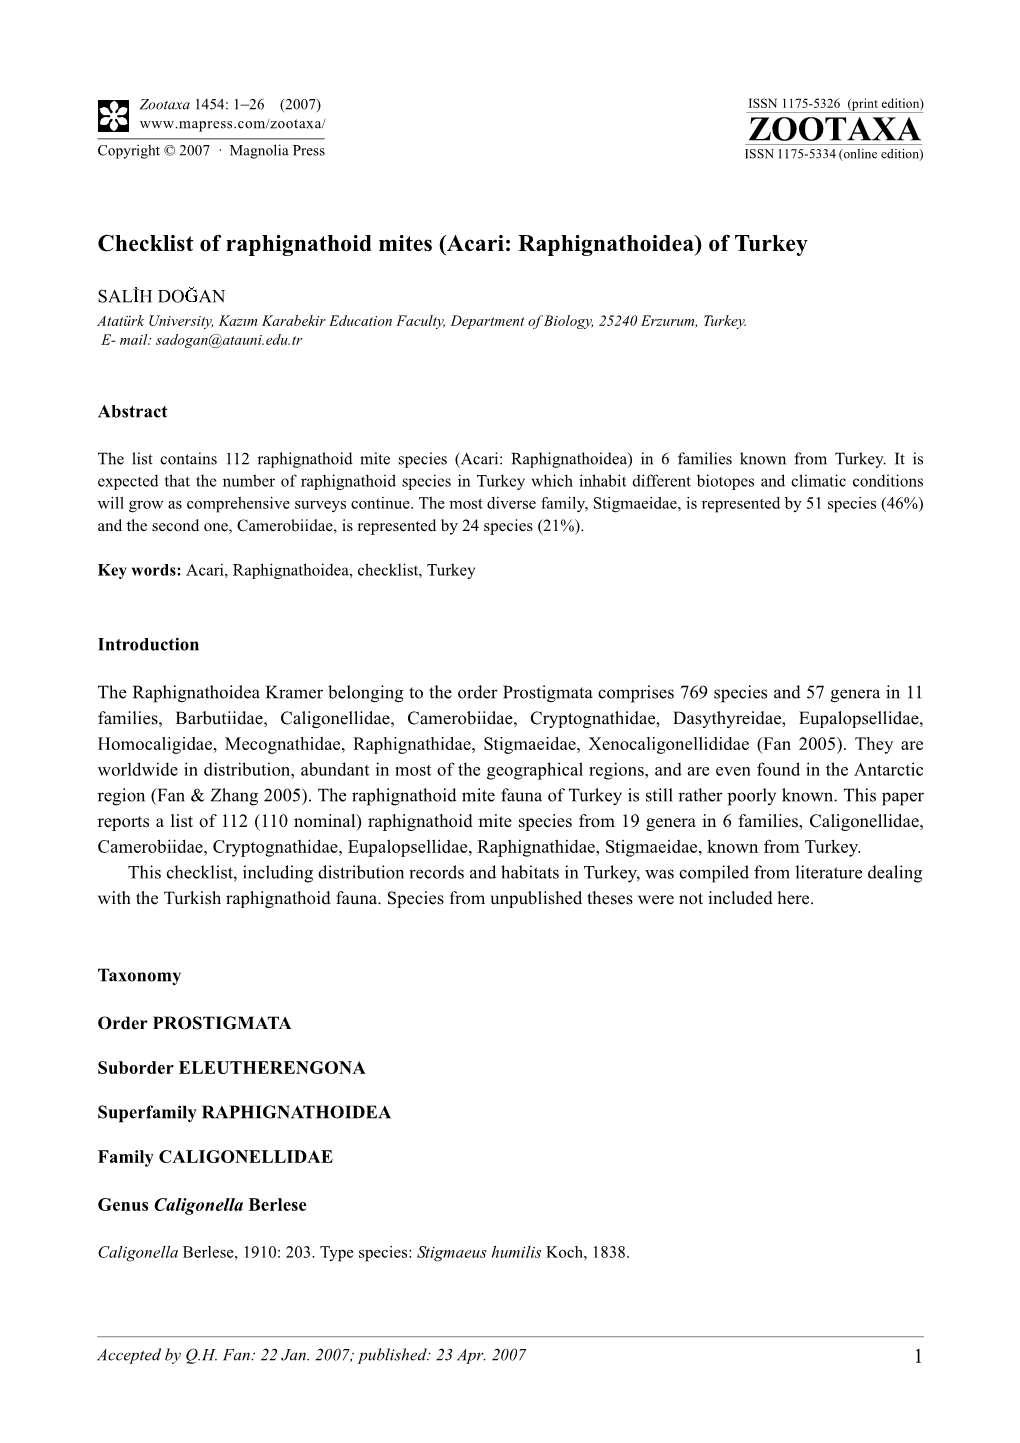 Zootaxa,Checklist of Raphignathoid Mites (Acari: Raphignathoidea) Of